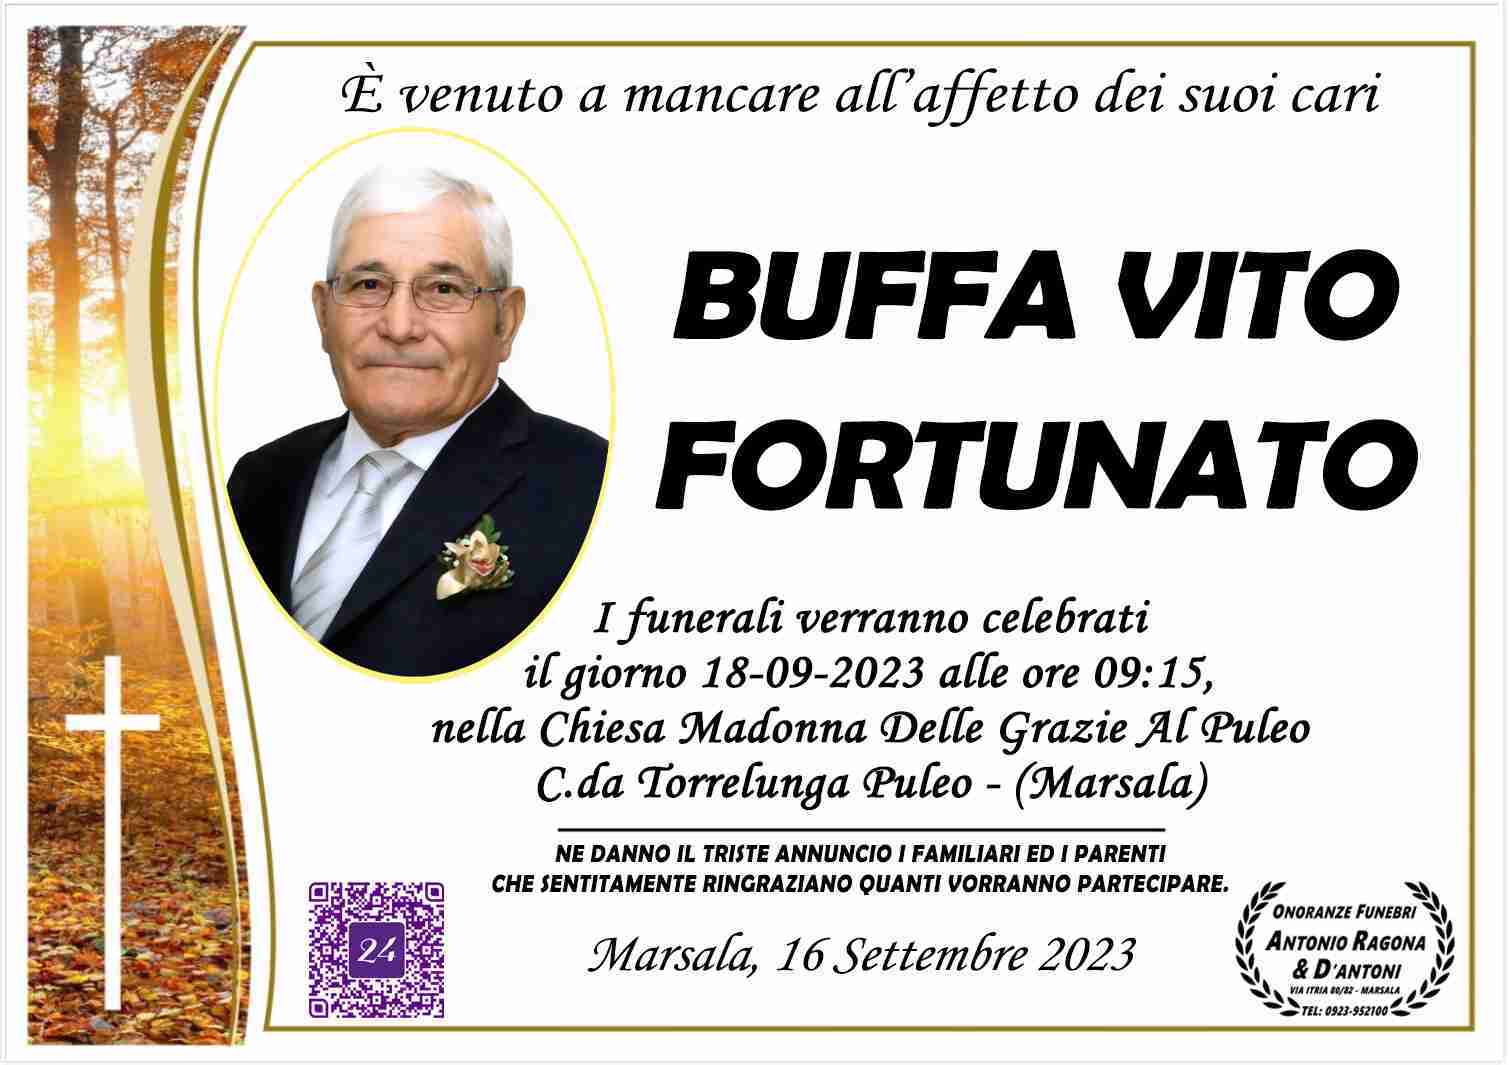 Vito Fortunato Buffa